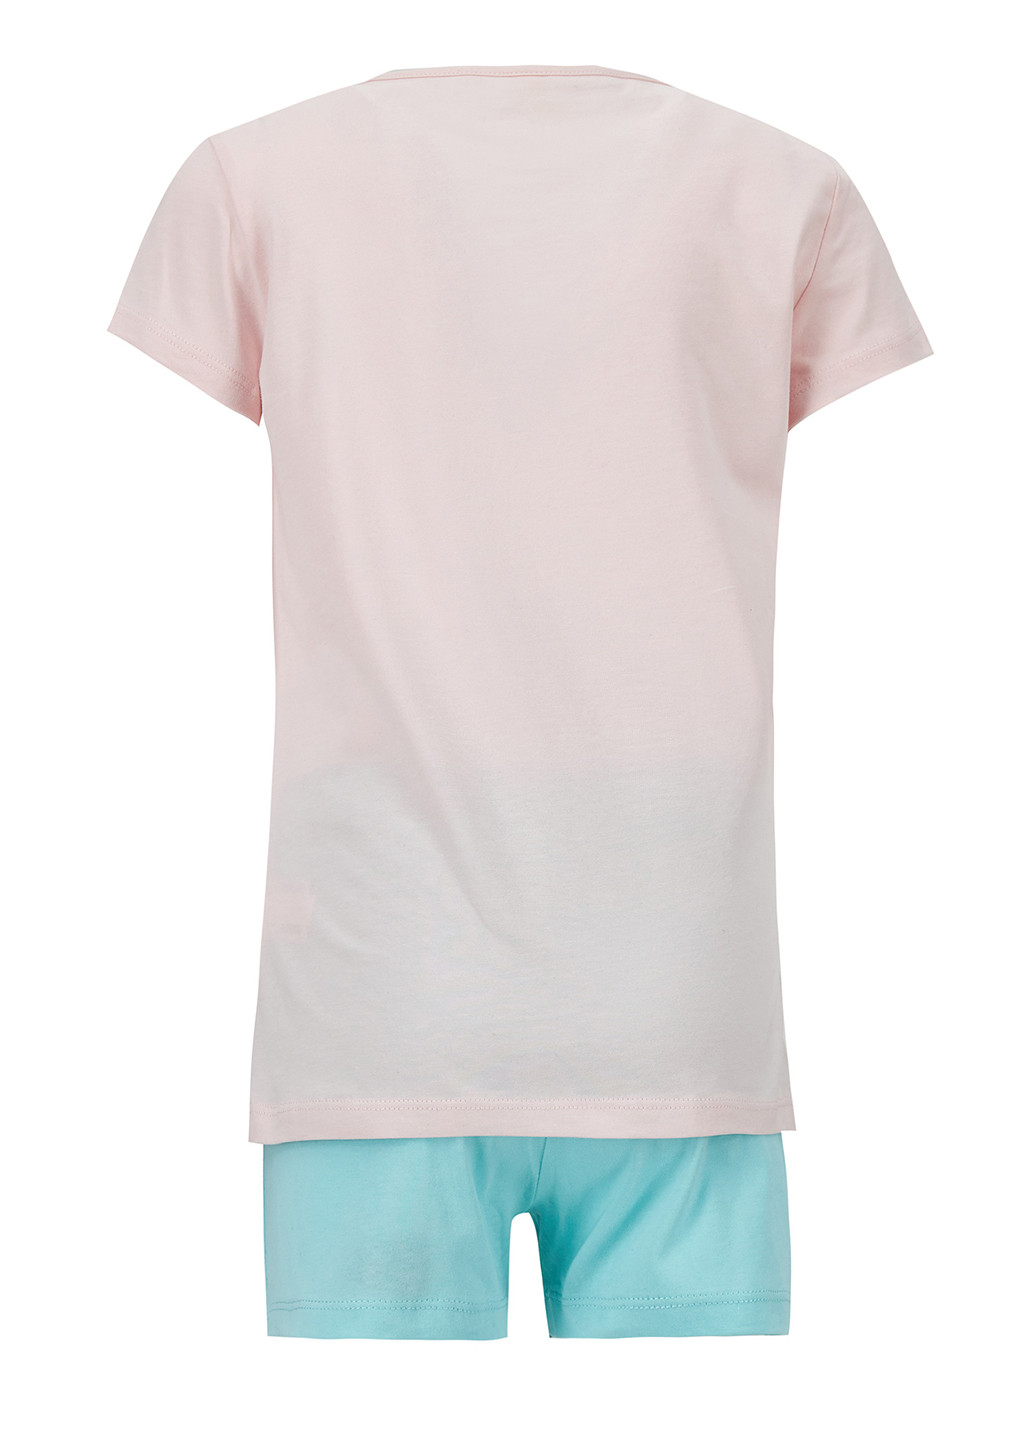 Комбинированная всесезон пижама футболка + шорты DeFacto